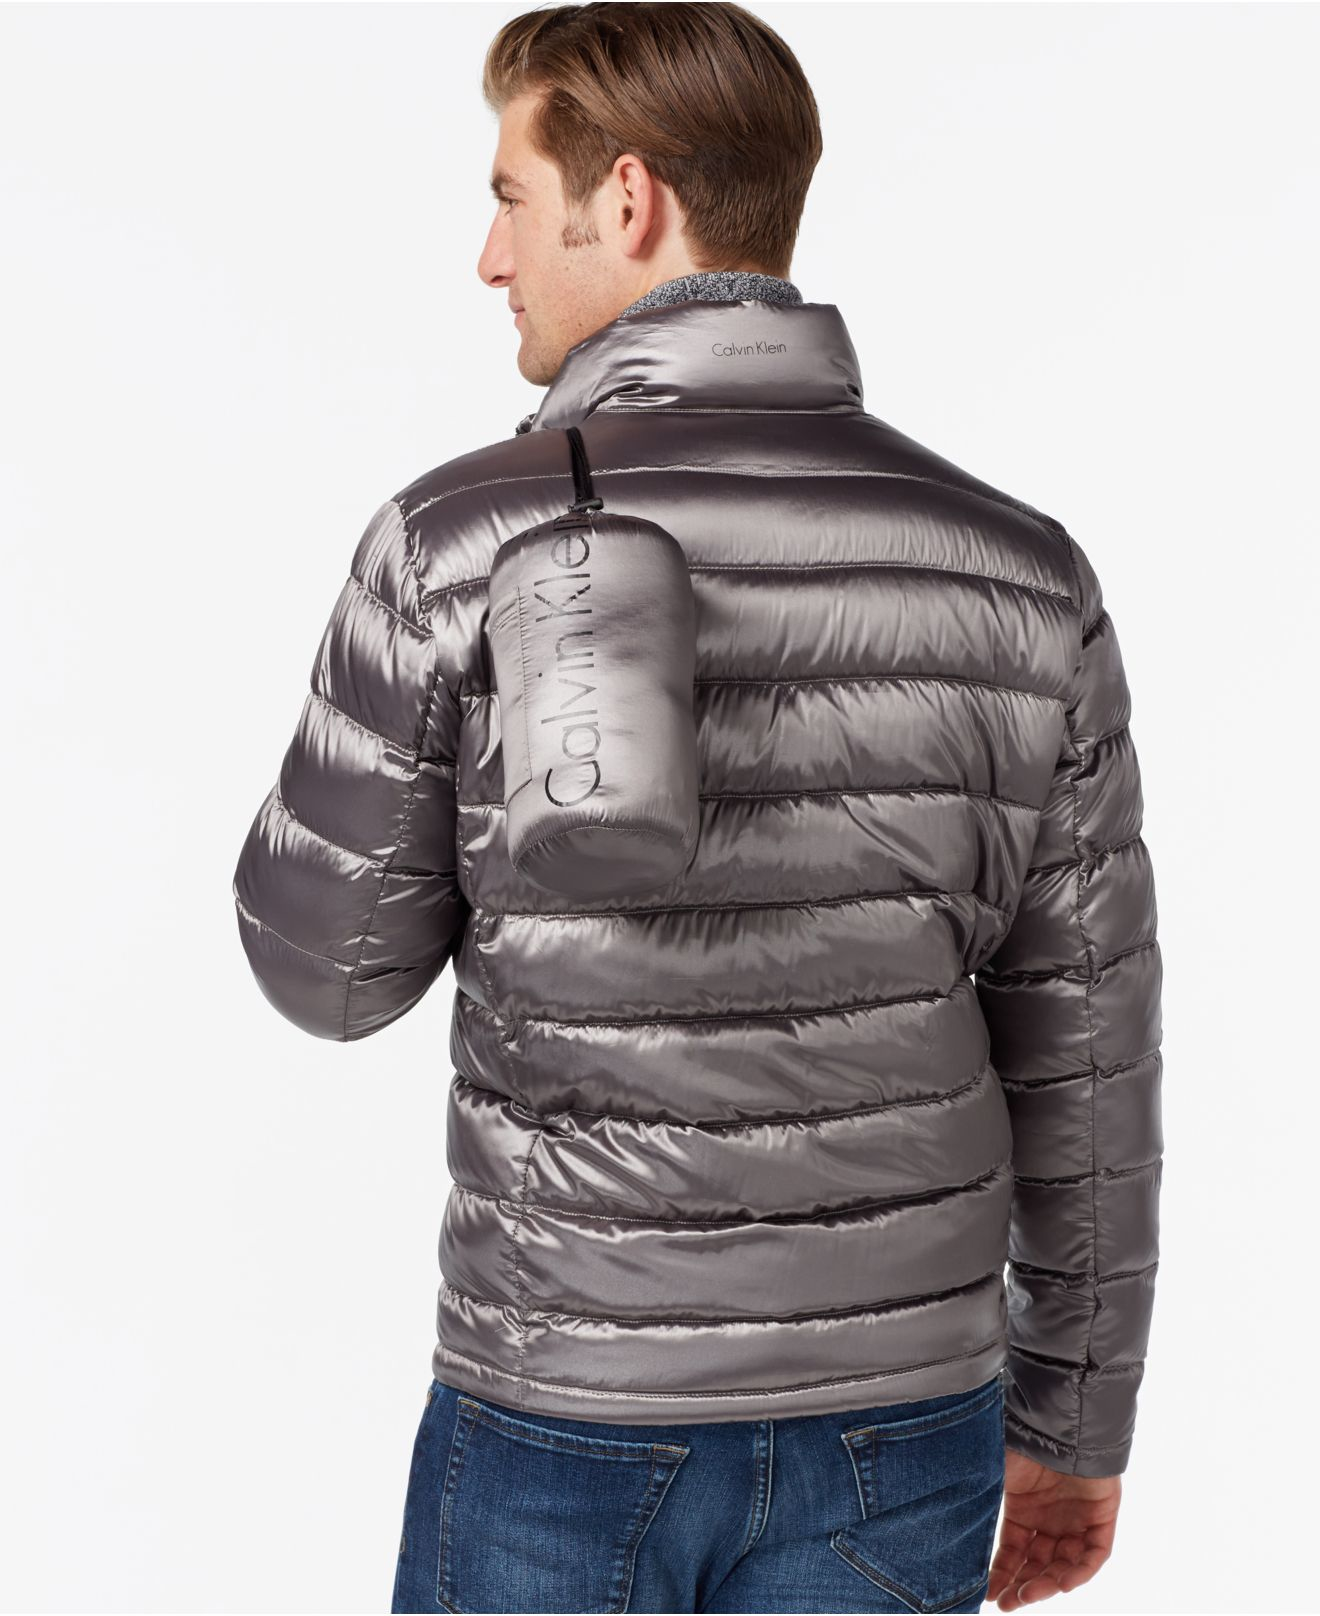 Download Lyst - Calvin Klein Men's Packable Down Jacket in Gray for Men